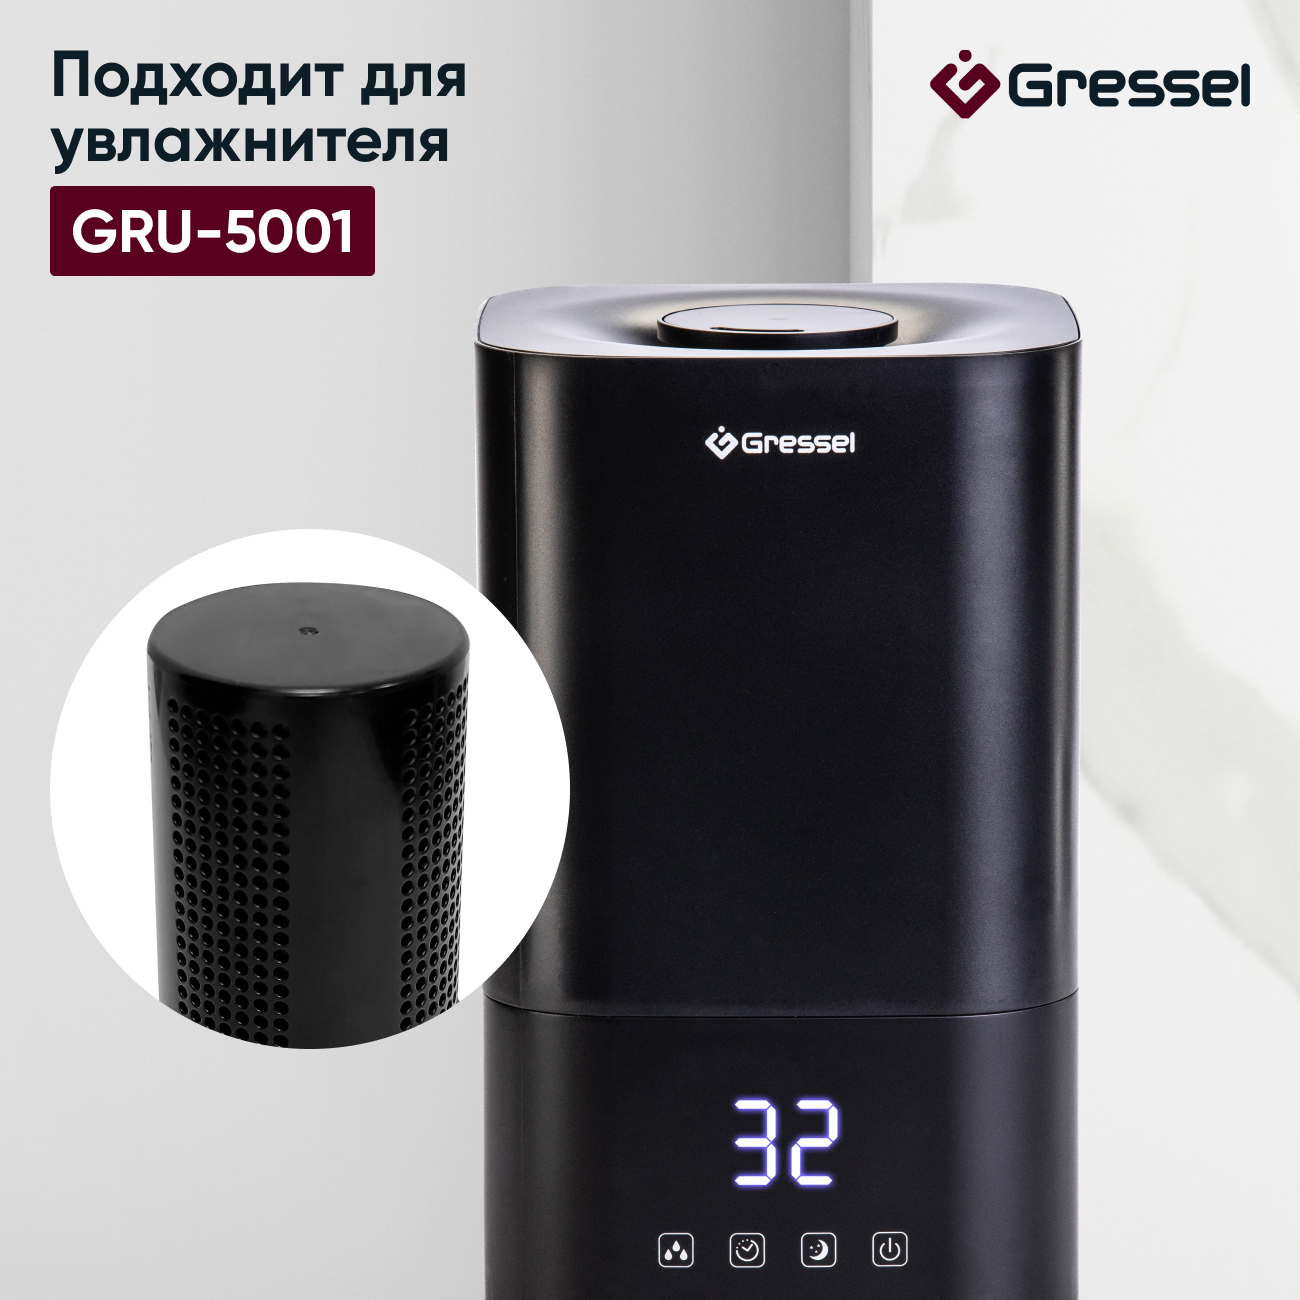 Фильтр увлажнителя воздуха Gressel G-5001 для модели GRU-5001 фильтр увлажнителя воздуха gressel g 5001 для модели gru 5001